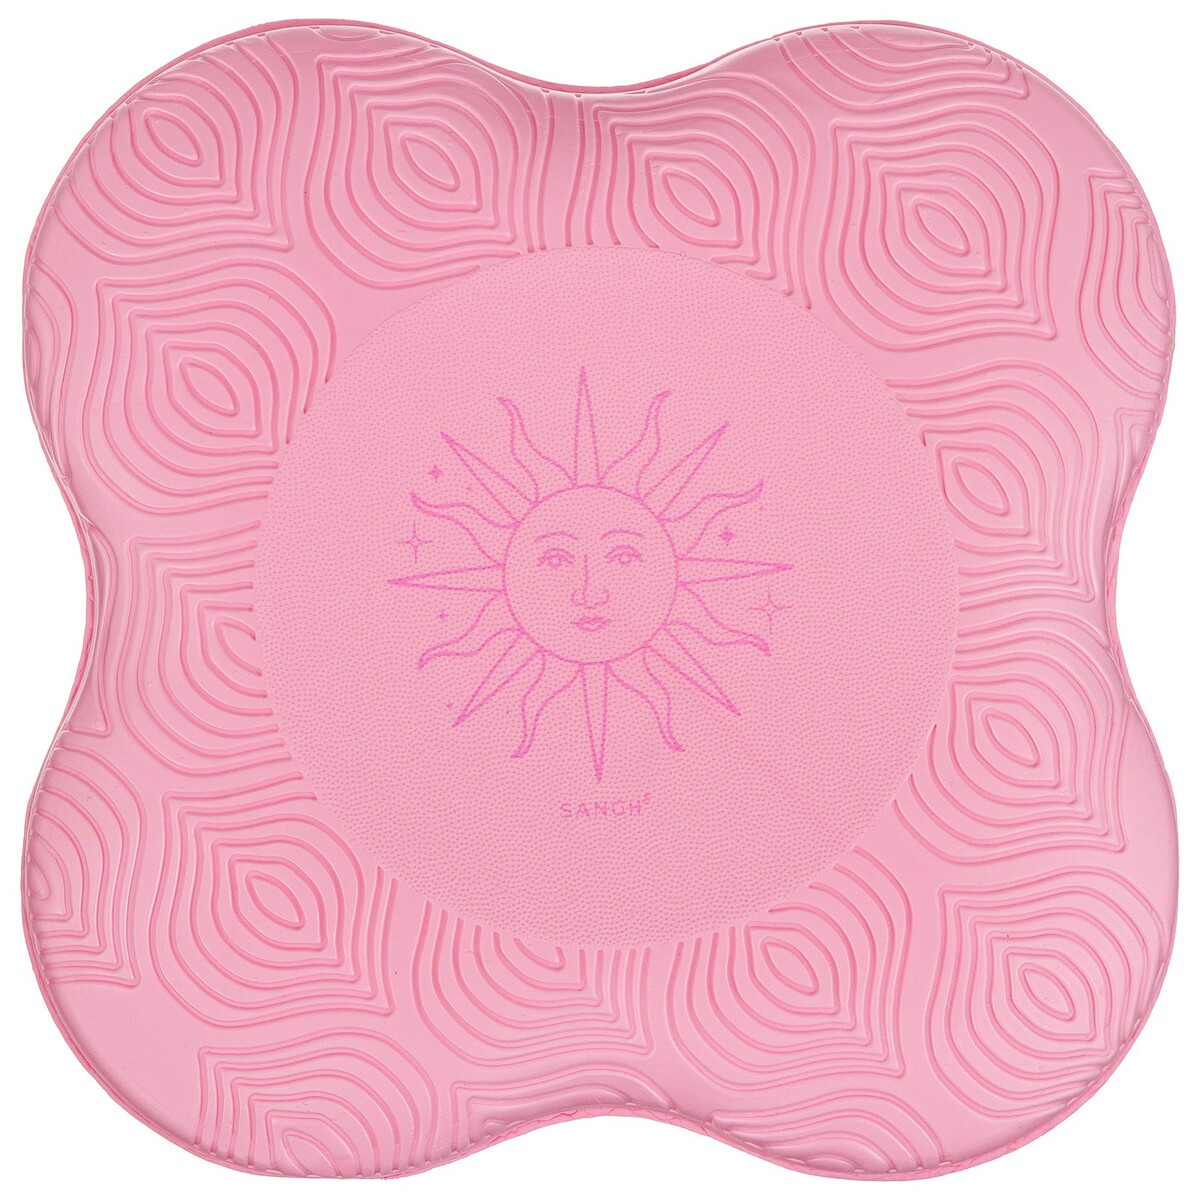 Коврик под колени для йоги sangh sun, 20х20 см, цвет розовый коврик для йоги 185x68x0 4 см inex yoga pu mat полиуретан с принтом pumat flo53 ущее озеро